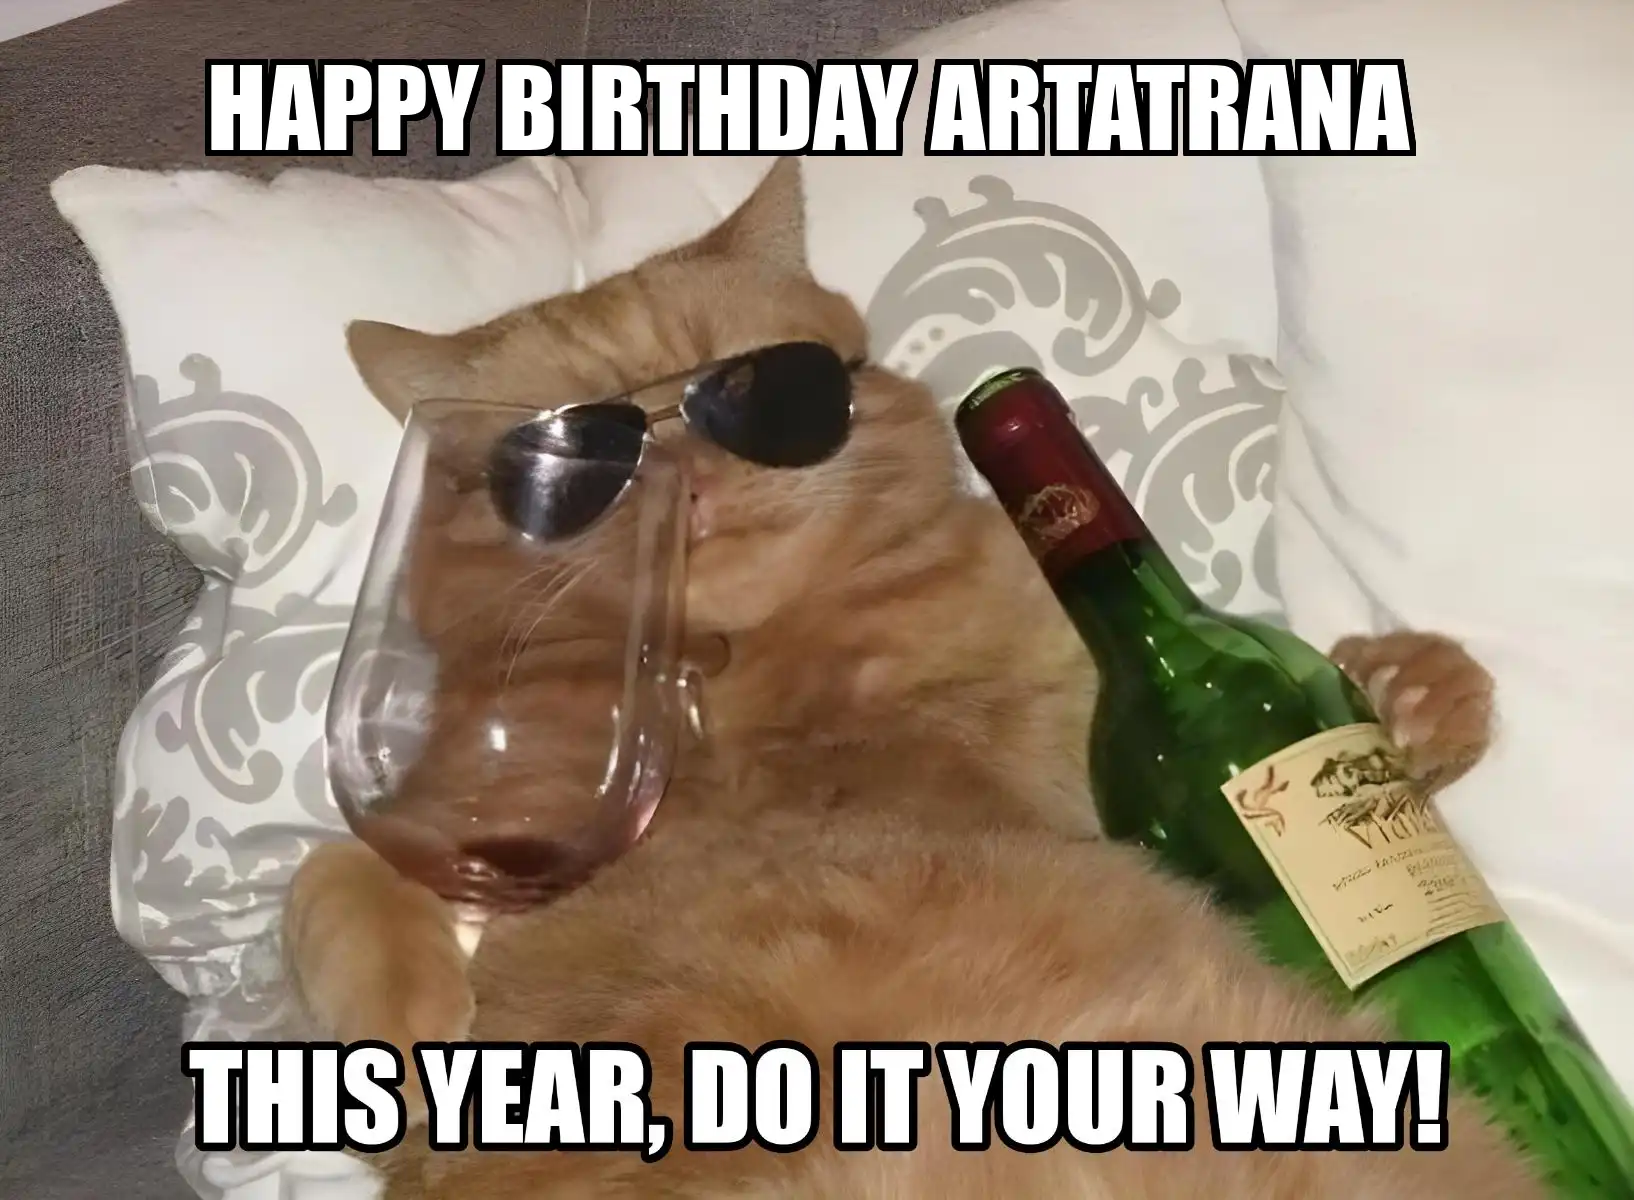 Happy Birthday Artatrana This Year Do It Your Way Meme